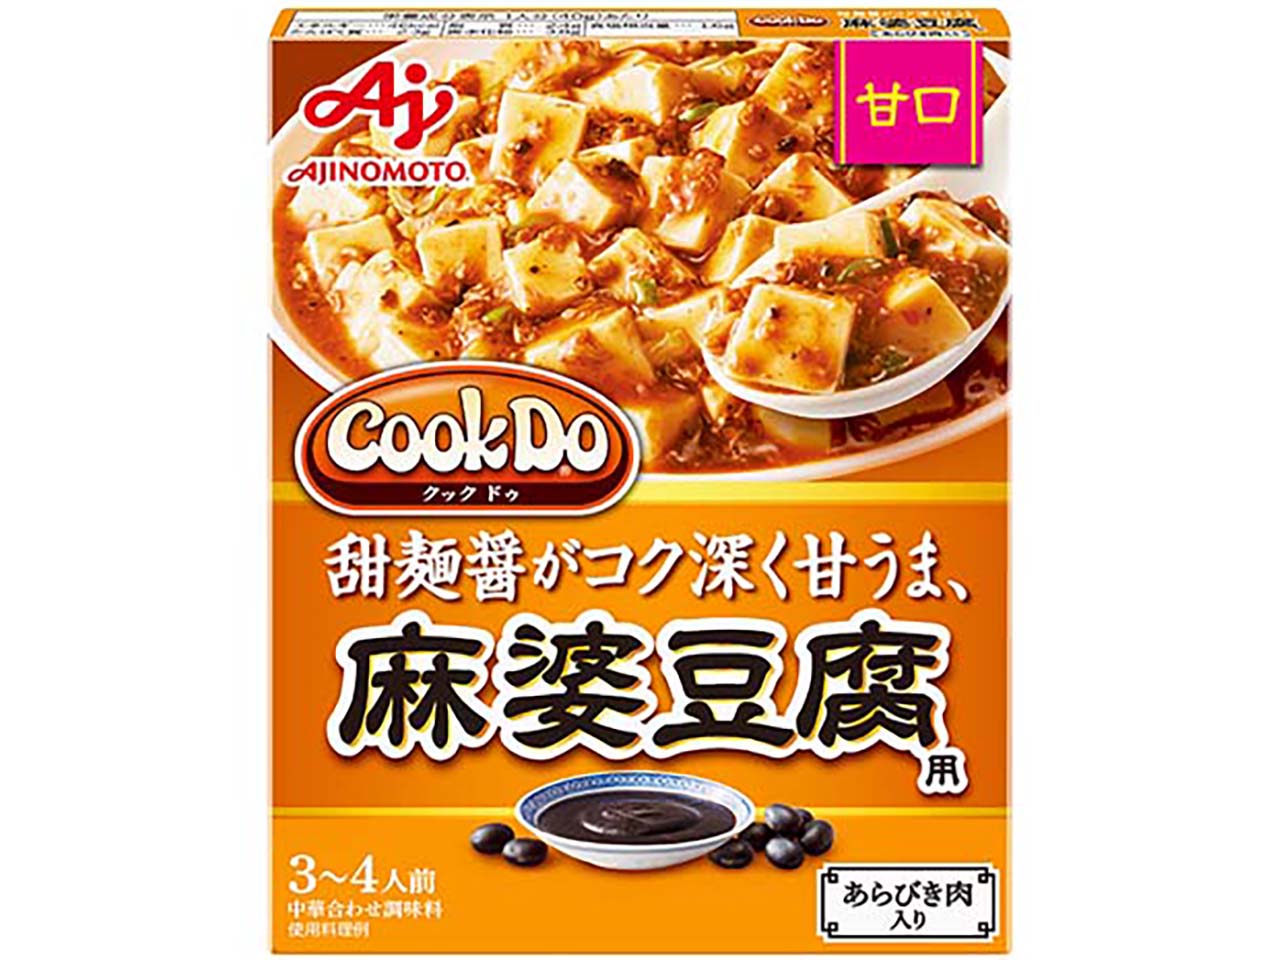 「Cook Do」あらびき肉入り麻婆豆腐用 甘口 